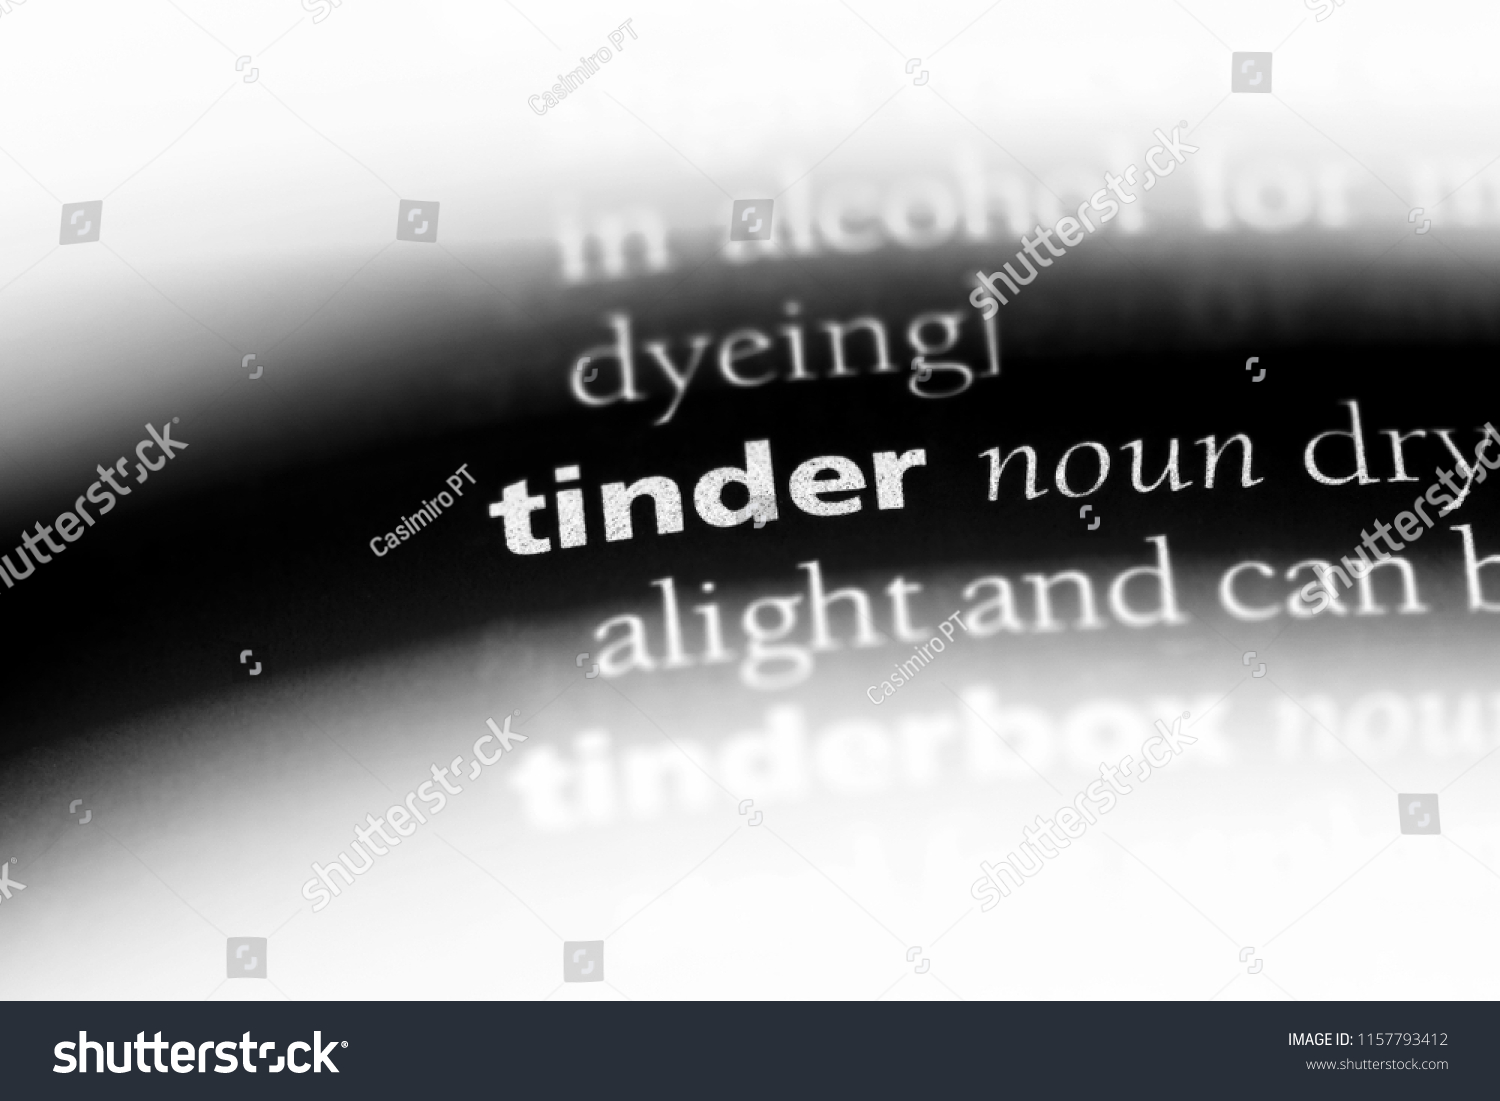 Tinder define How Tinder